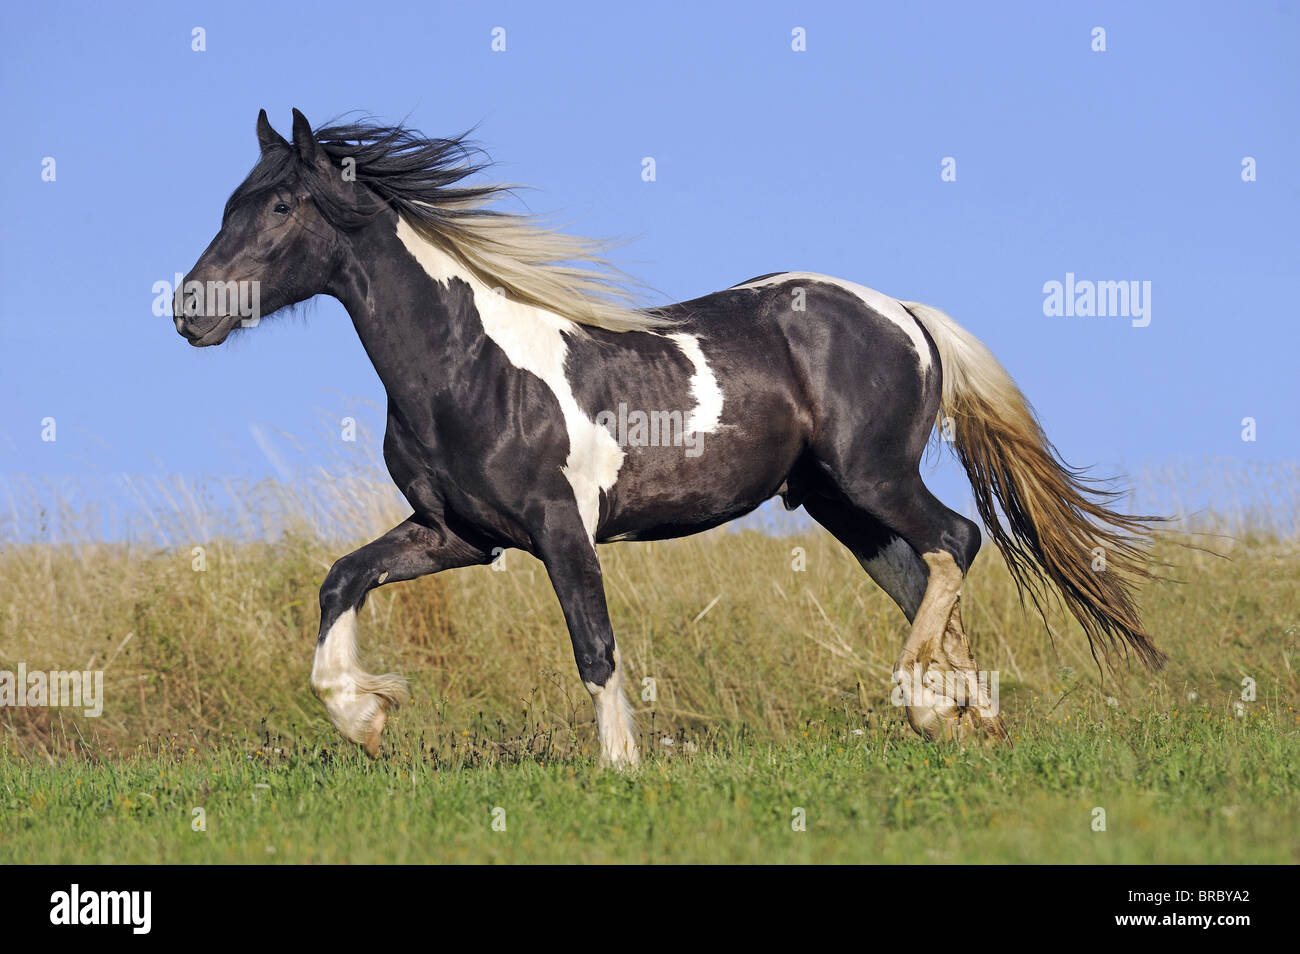 Gypsy Vanner caballo (Equus ferus caballus), semental joven al trote en una pradera. Foto de stock